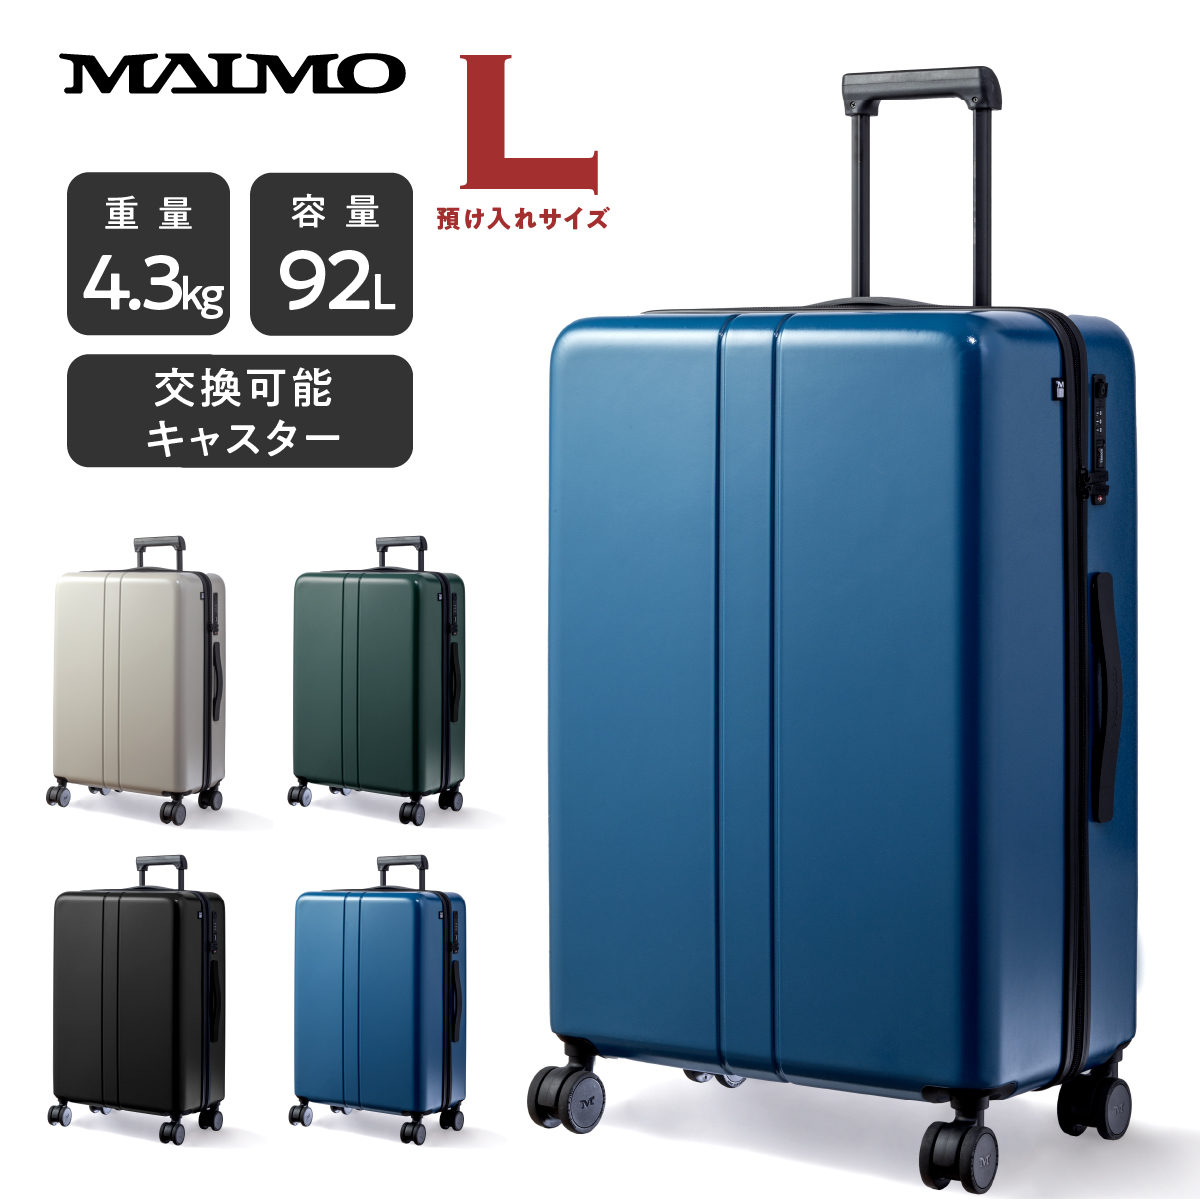 はな様 MAIMO スーツケース フォレストグリーン-